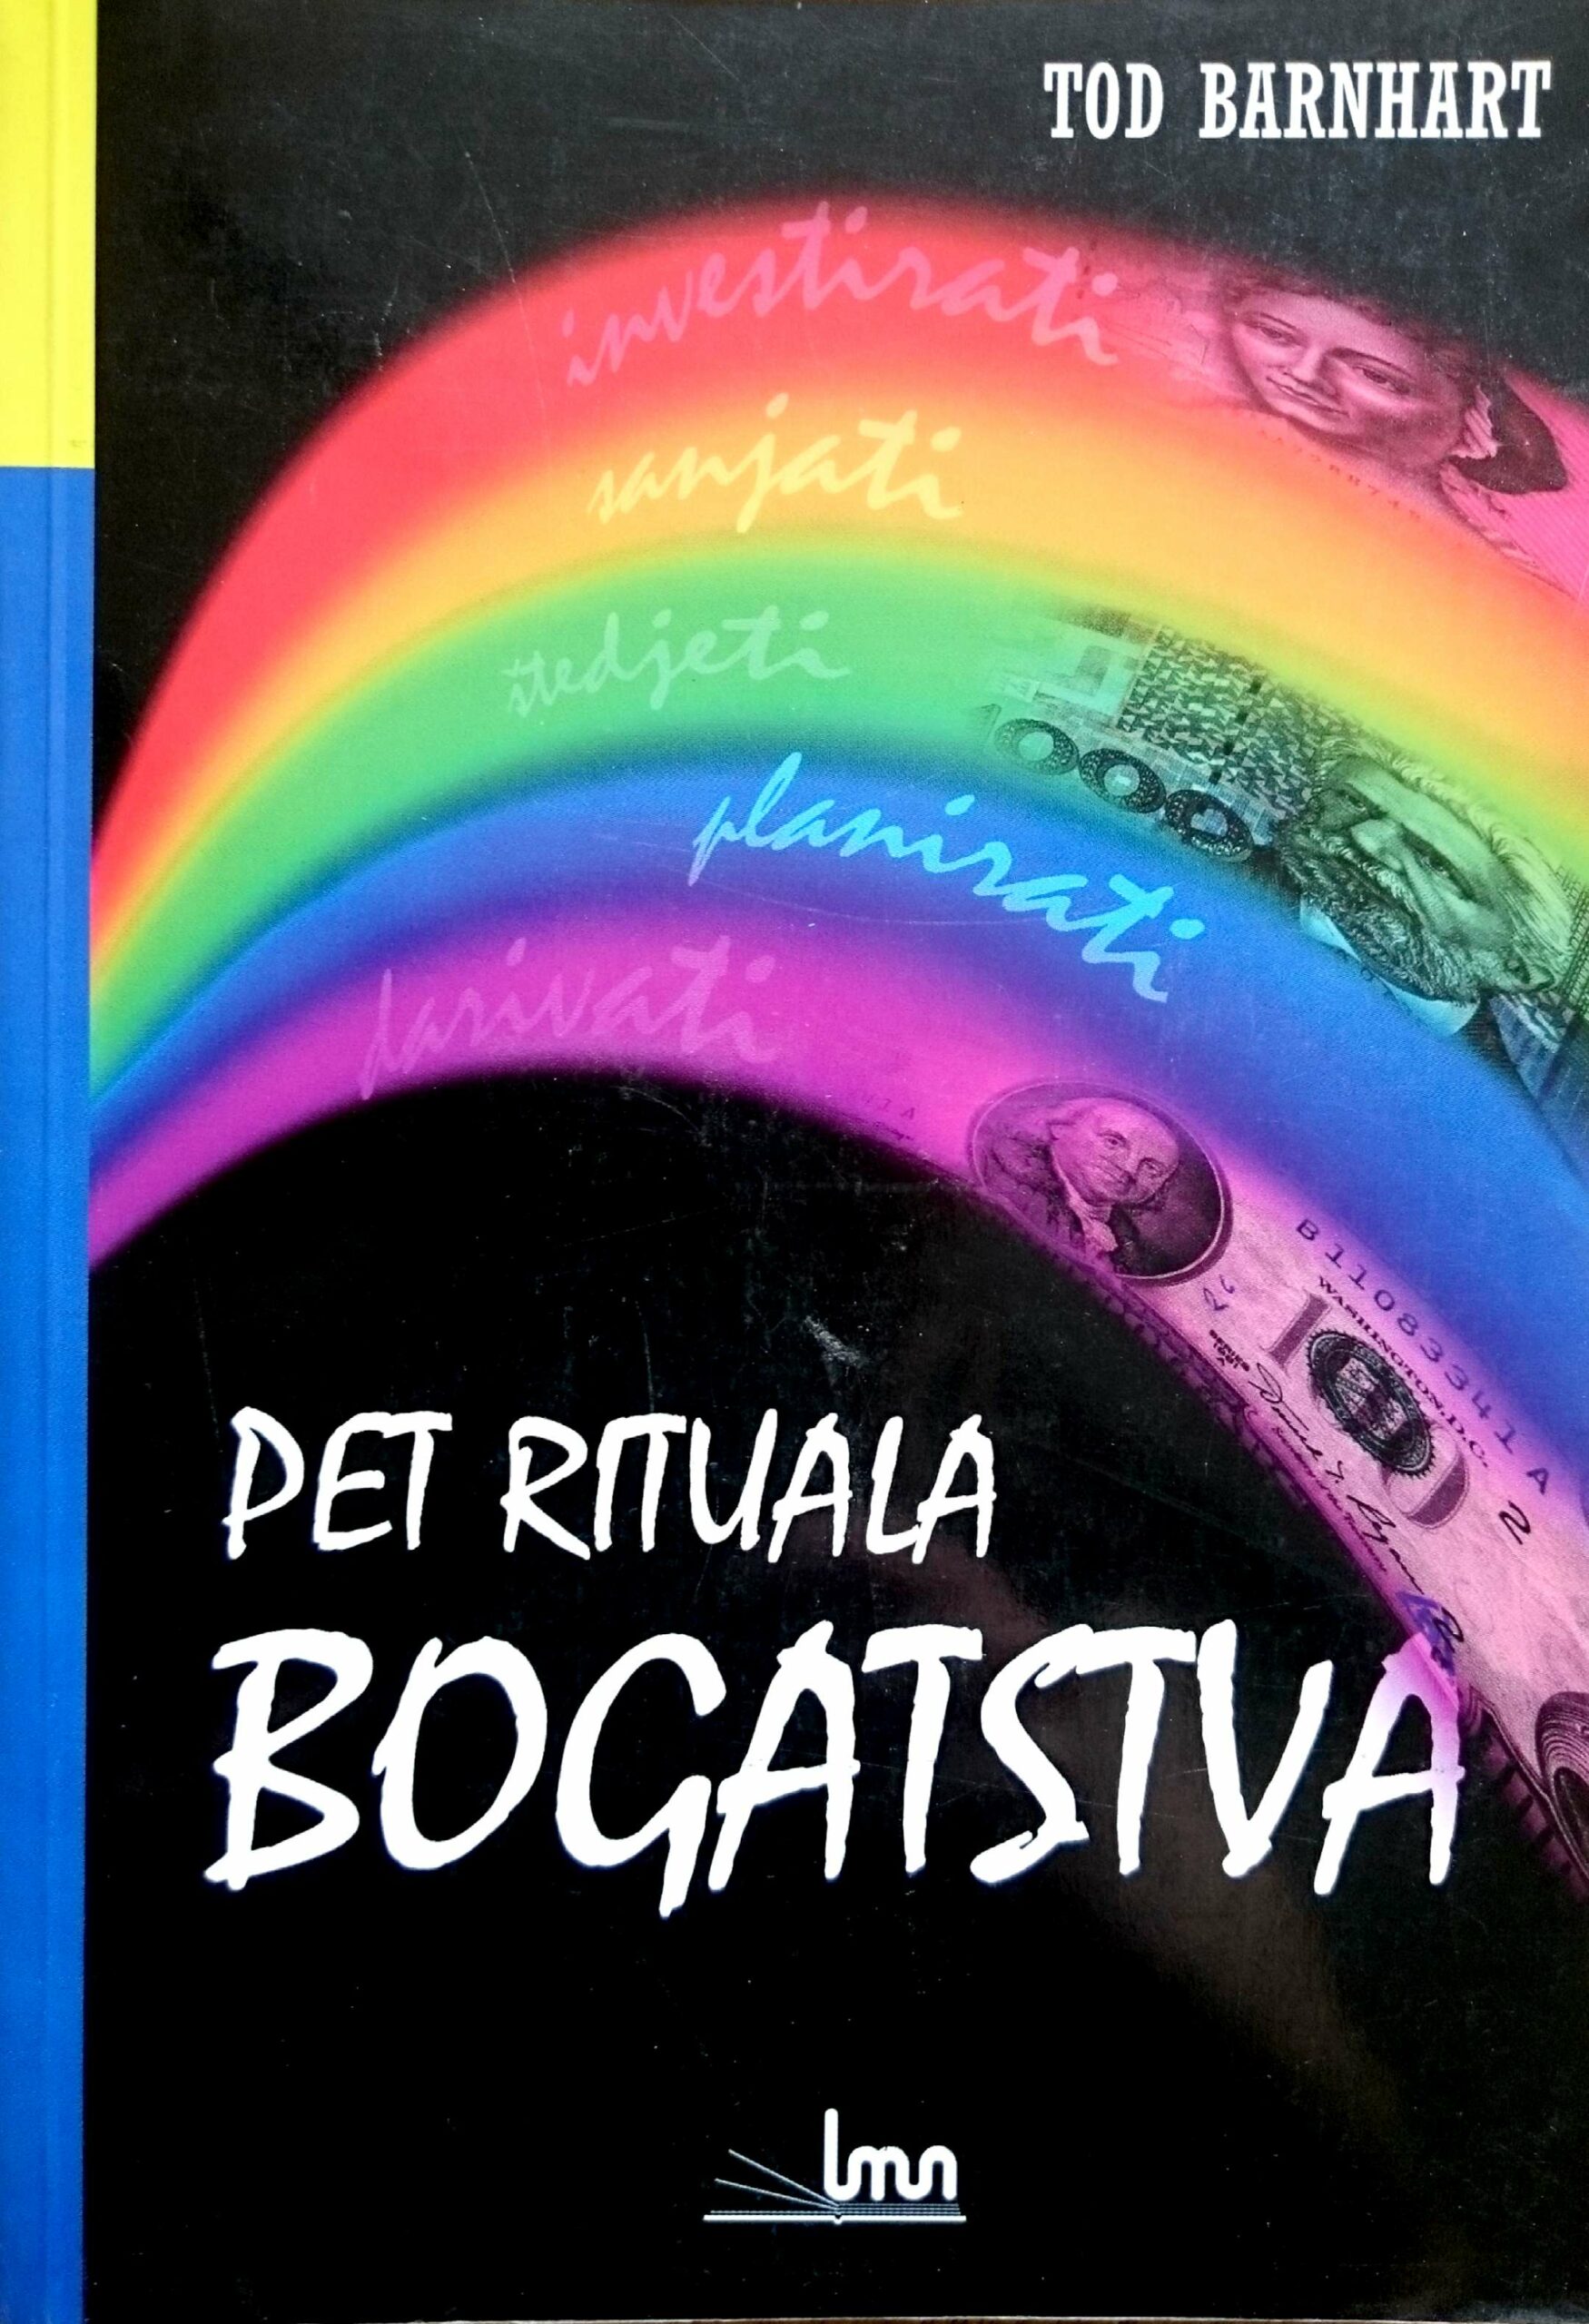 PET RITUALA BOGATSTVA - Naruči svoju knjigu